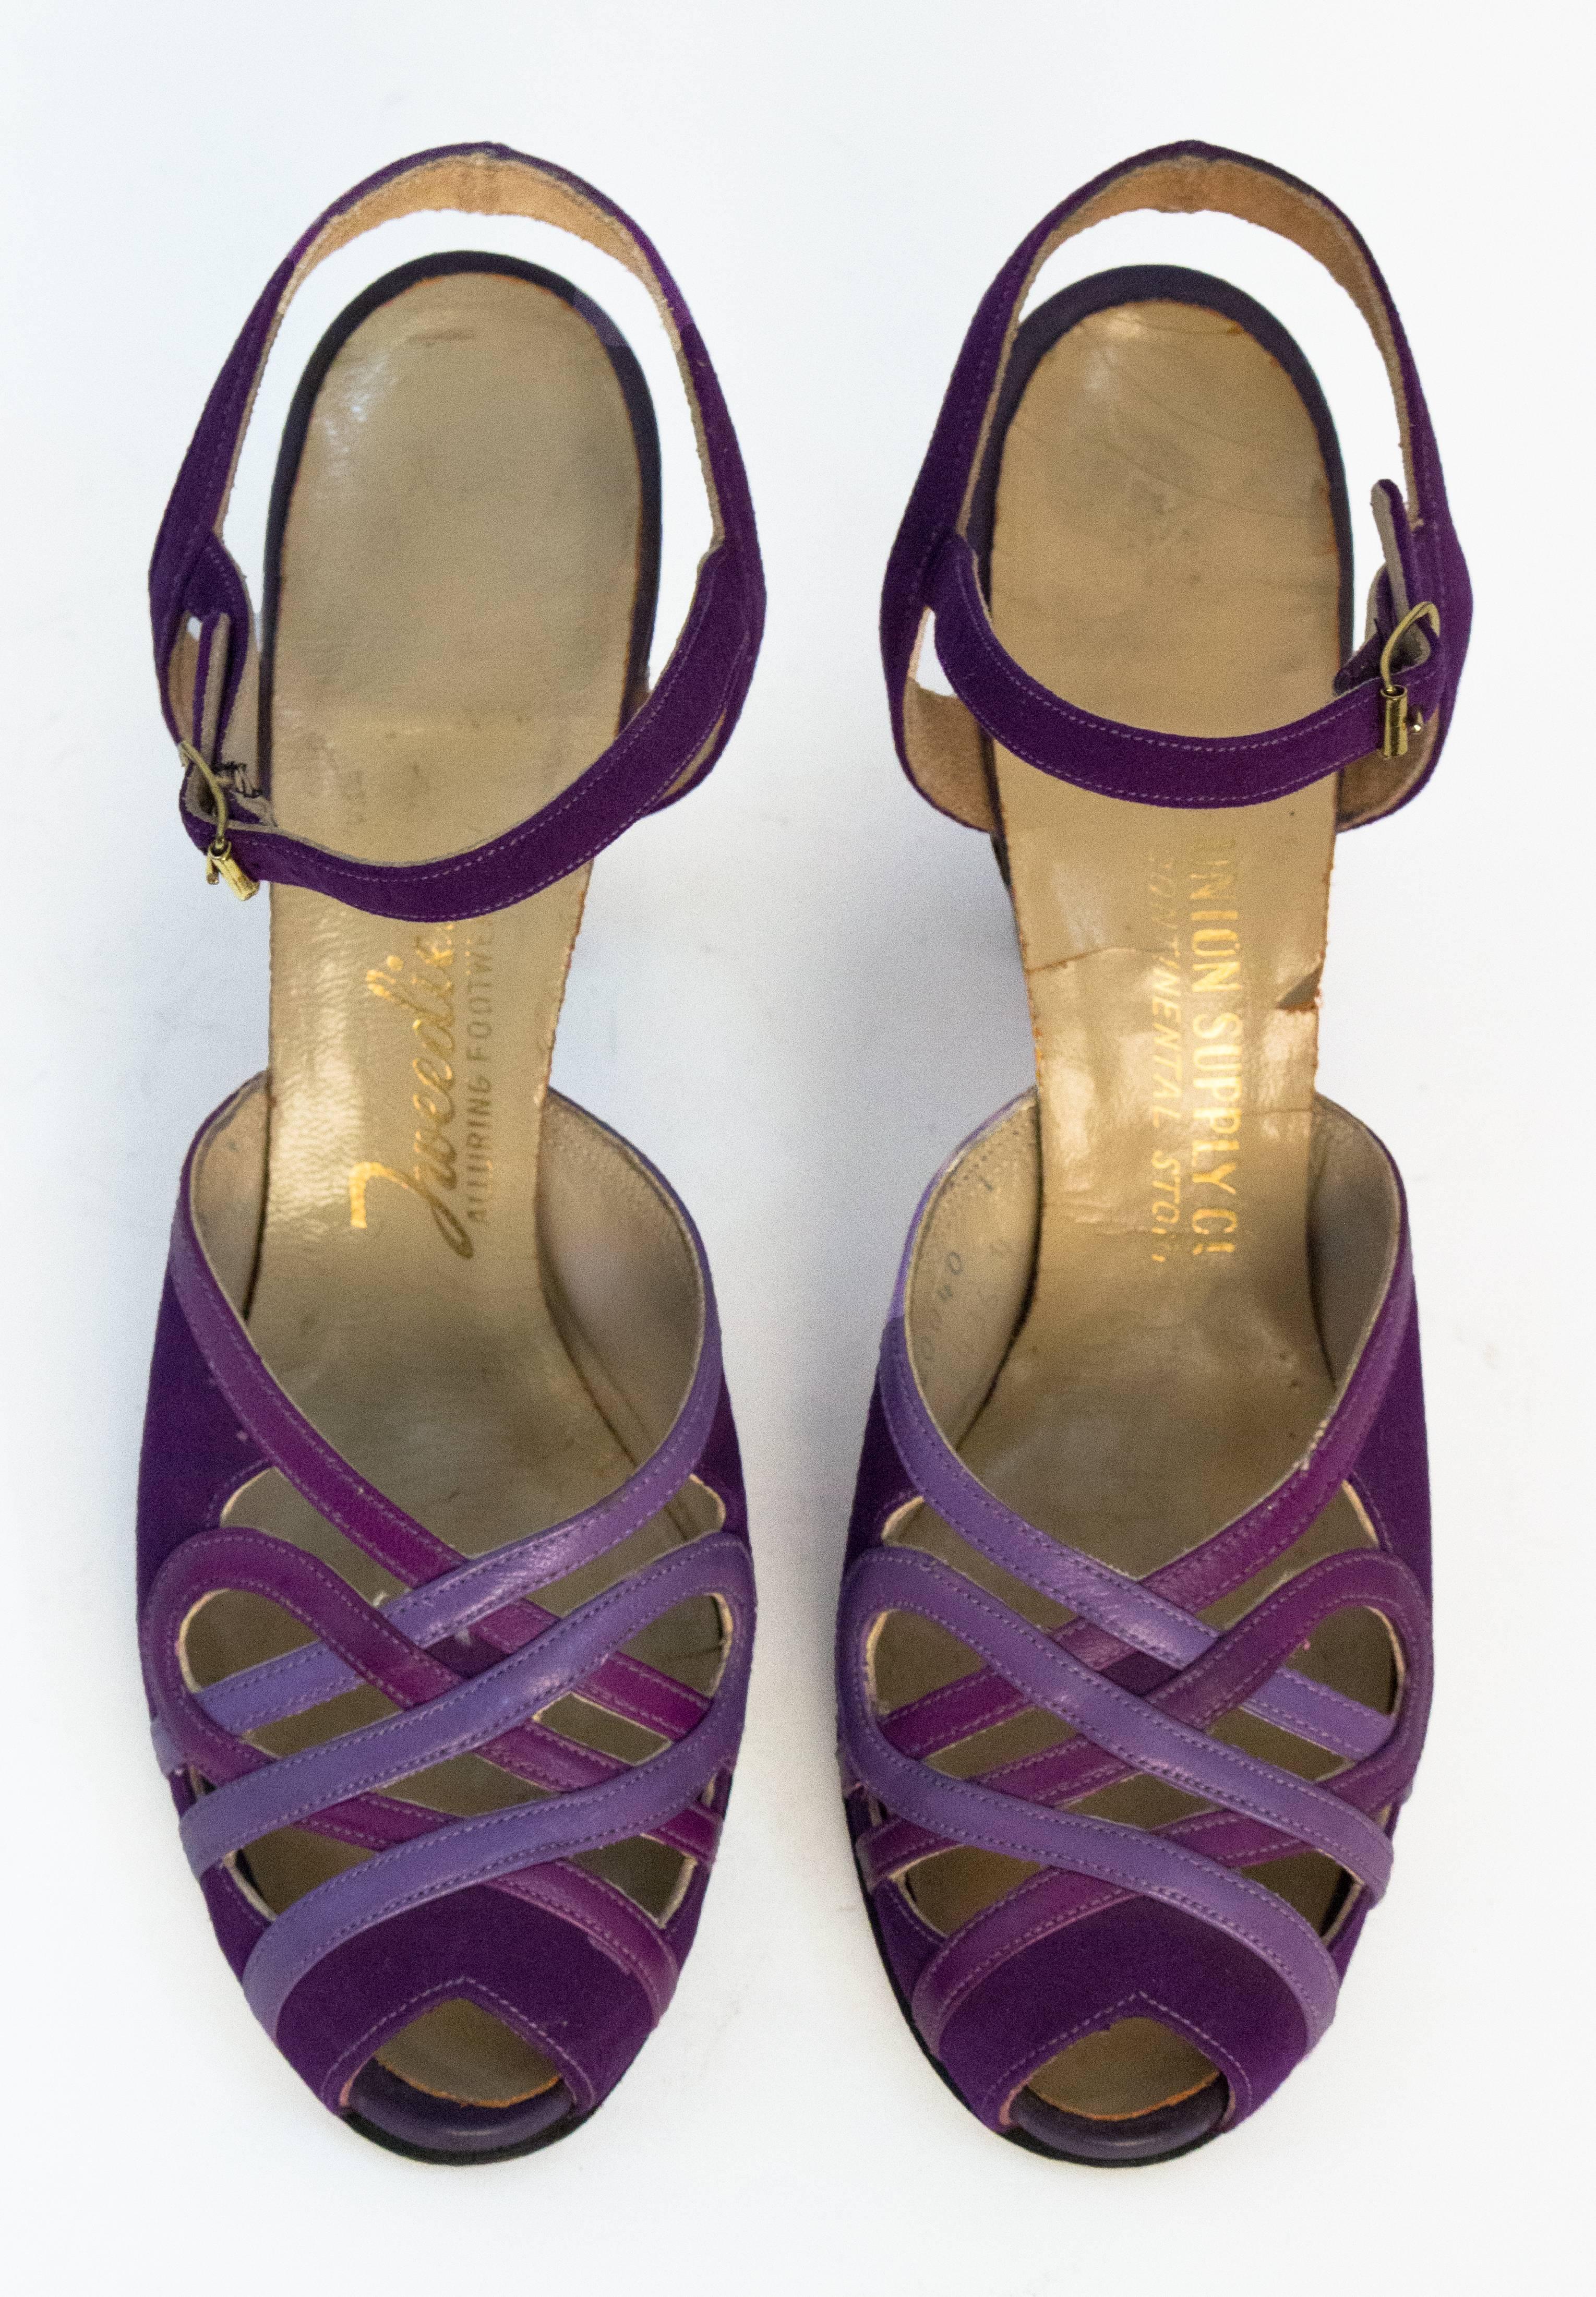 chaussures à talon en cuir et daim violet des années 40. Boucles de couleur or sur le côté des bretelles. 

Mesures :
Semelle intérieure : 9 1/4